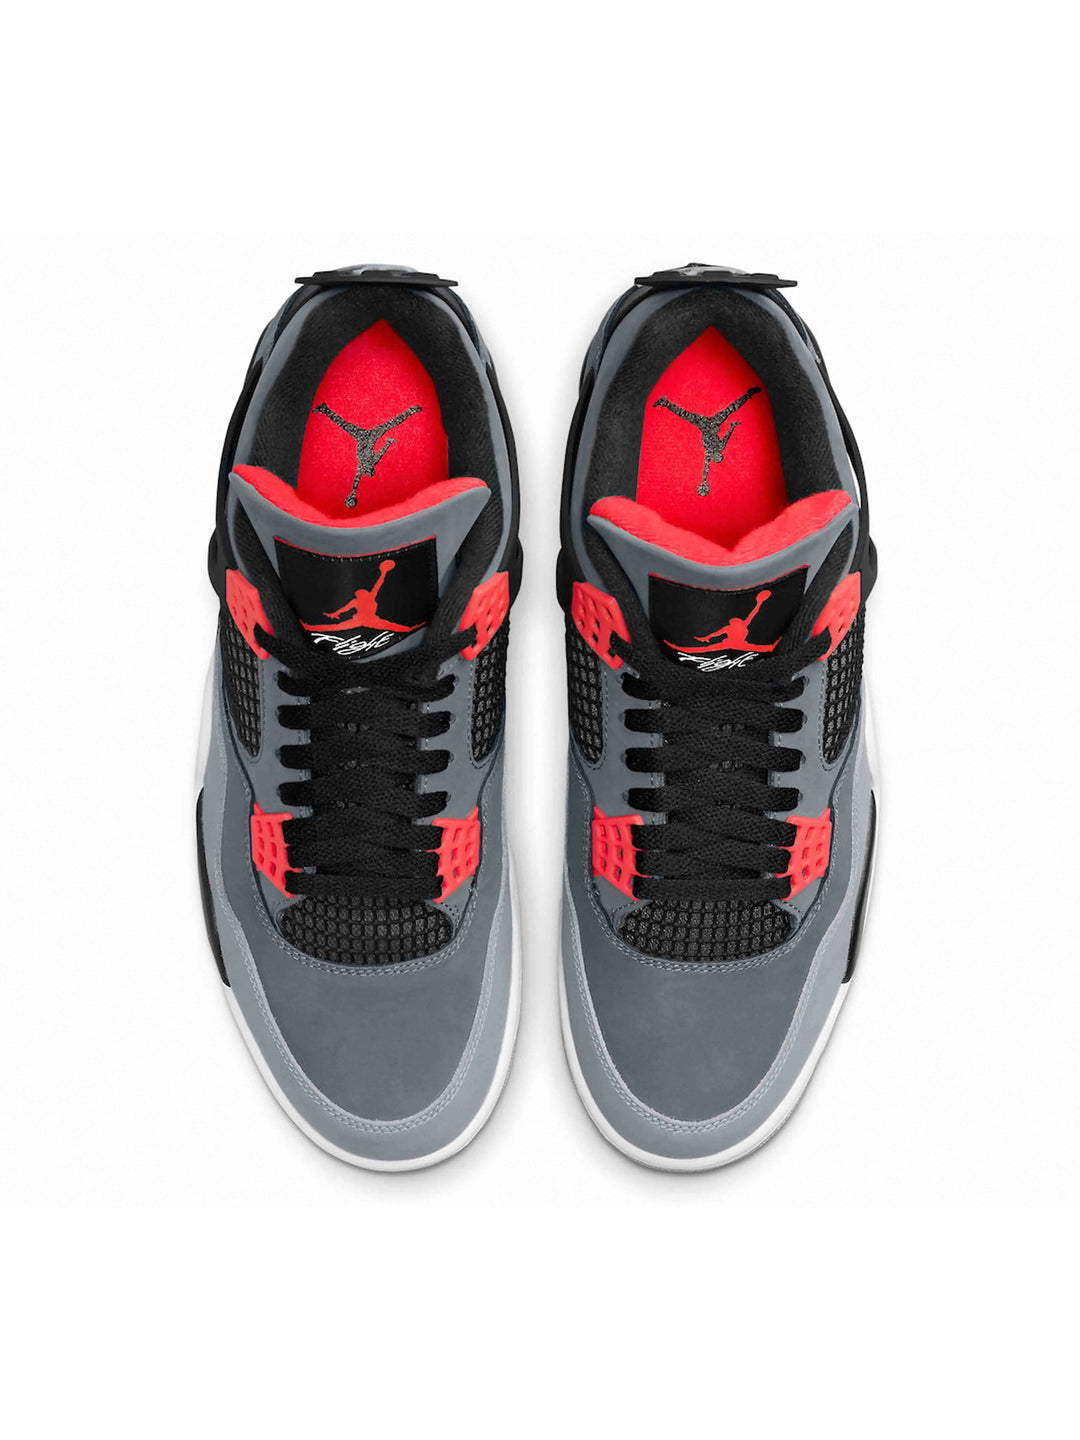 Nike Air Jordan 4 Retro Infrared Jordan Brand